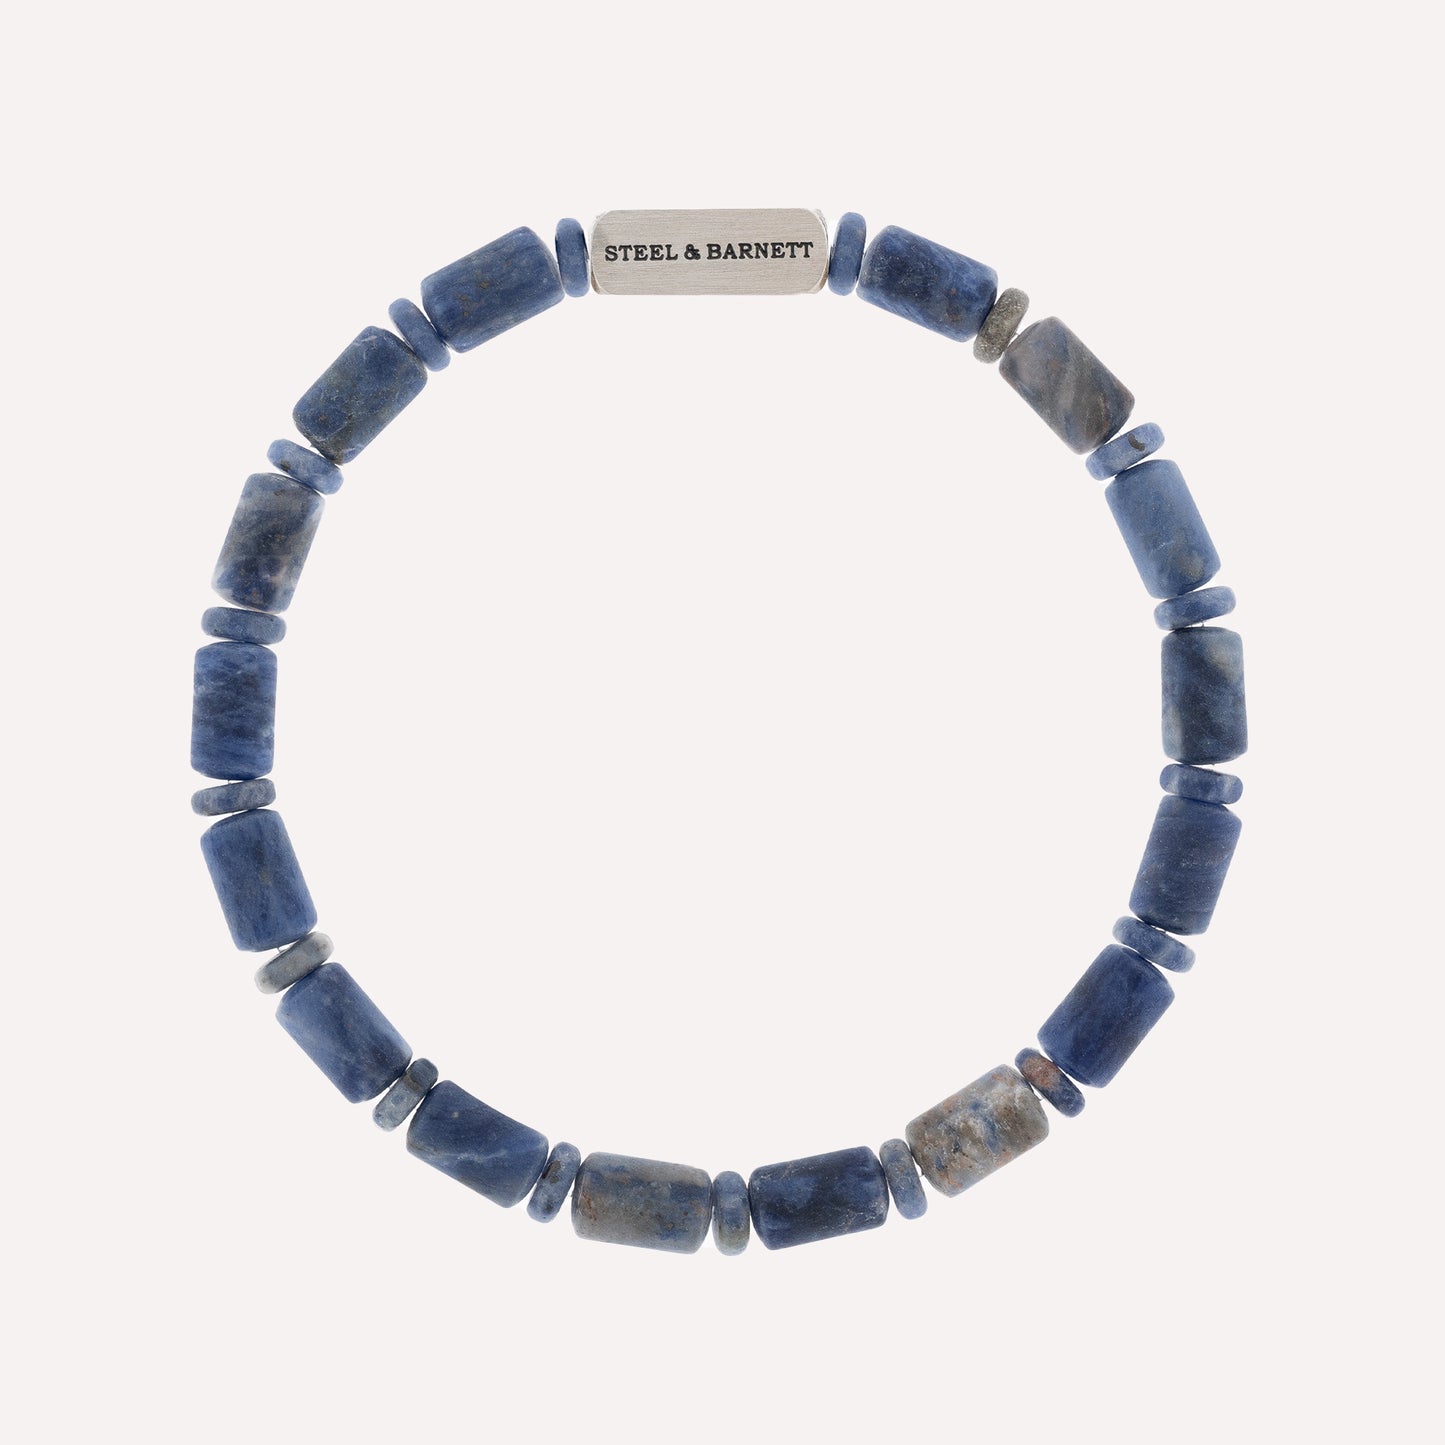 blue stone bracelet for men stainless steel gift for him steel and barnett Colourful Cal Barrel Gemstone Bracelet Matt Sodalite